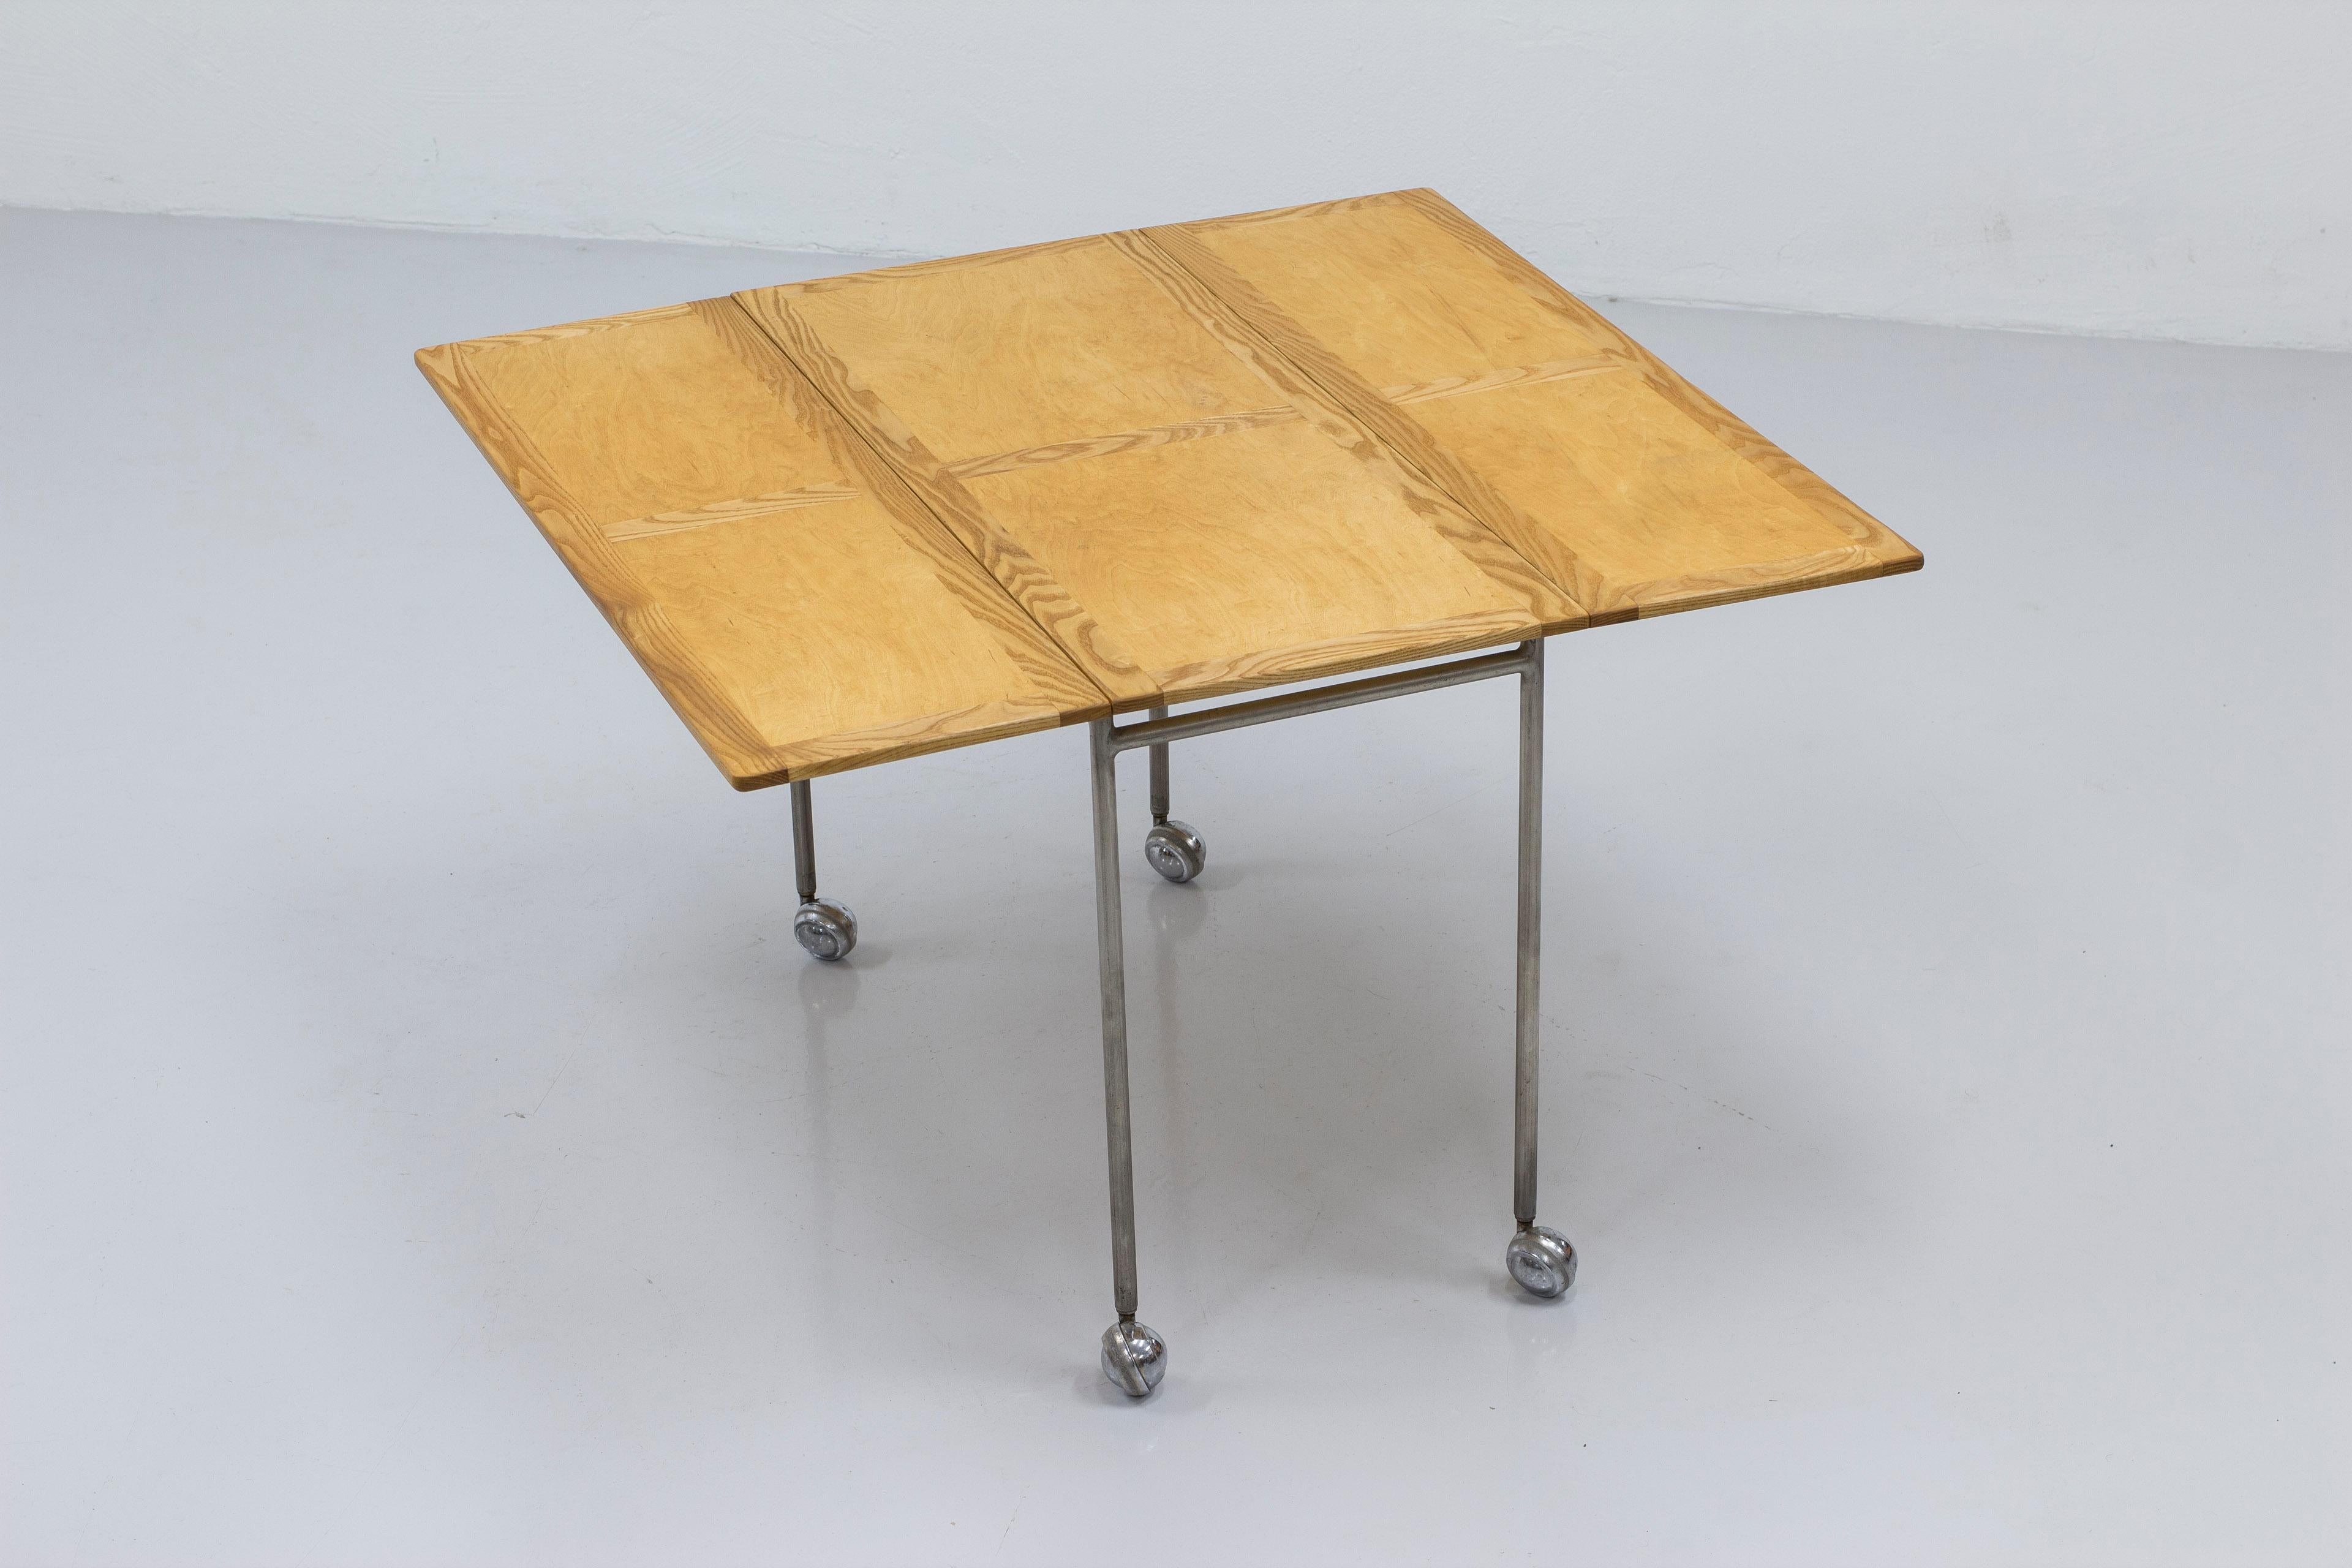 Ausziehbarer Beistelltisch Modell Berit, entworfen von Bruno Mathsson. Produziert von der Firma Karl Mathsson in Värnamo, Schweden, in den 1950er Jahren. Stahlgestell auf Rädern mit einer Tischplatte aus Esche und Birke mit sehr schöner